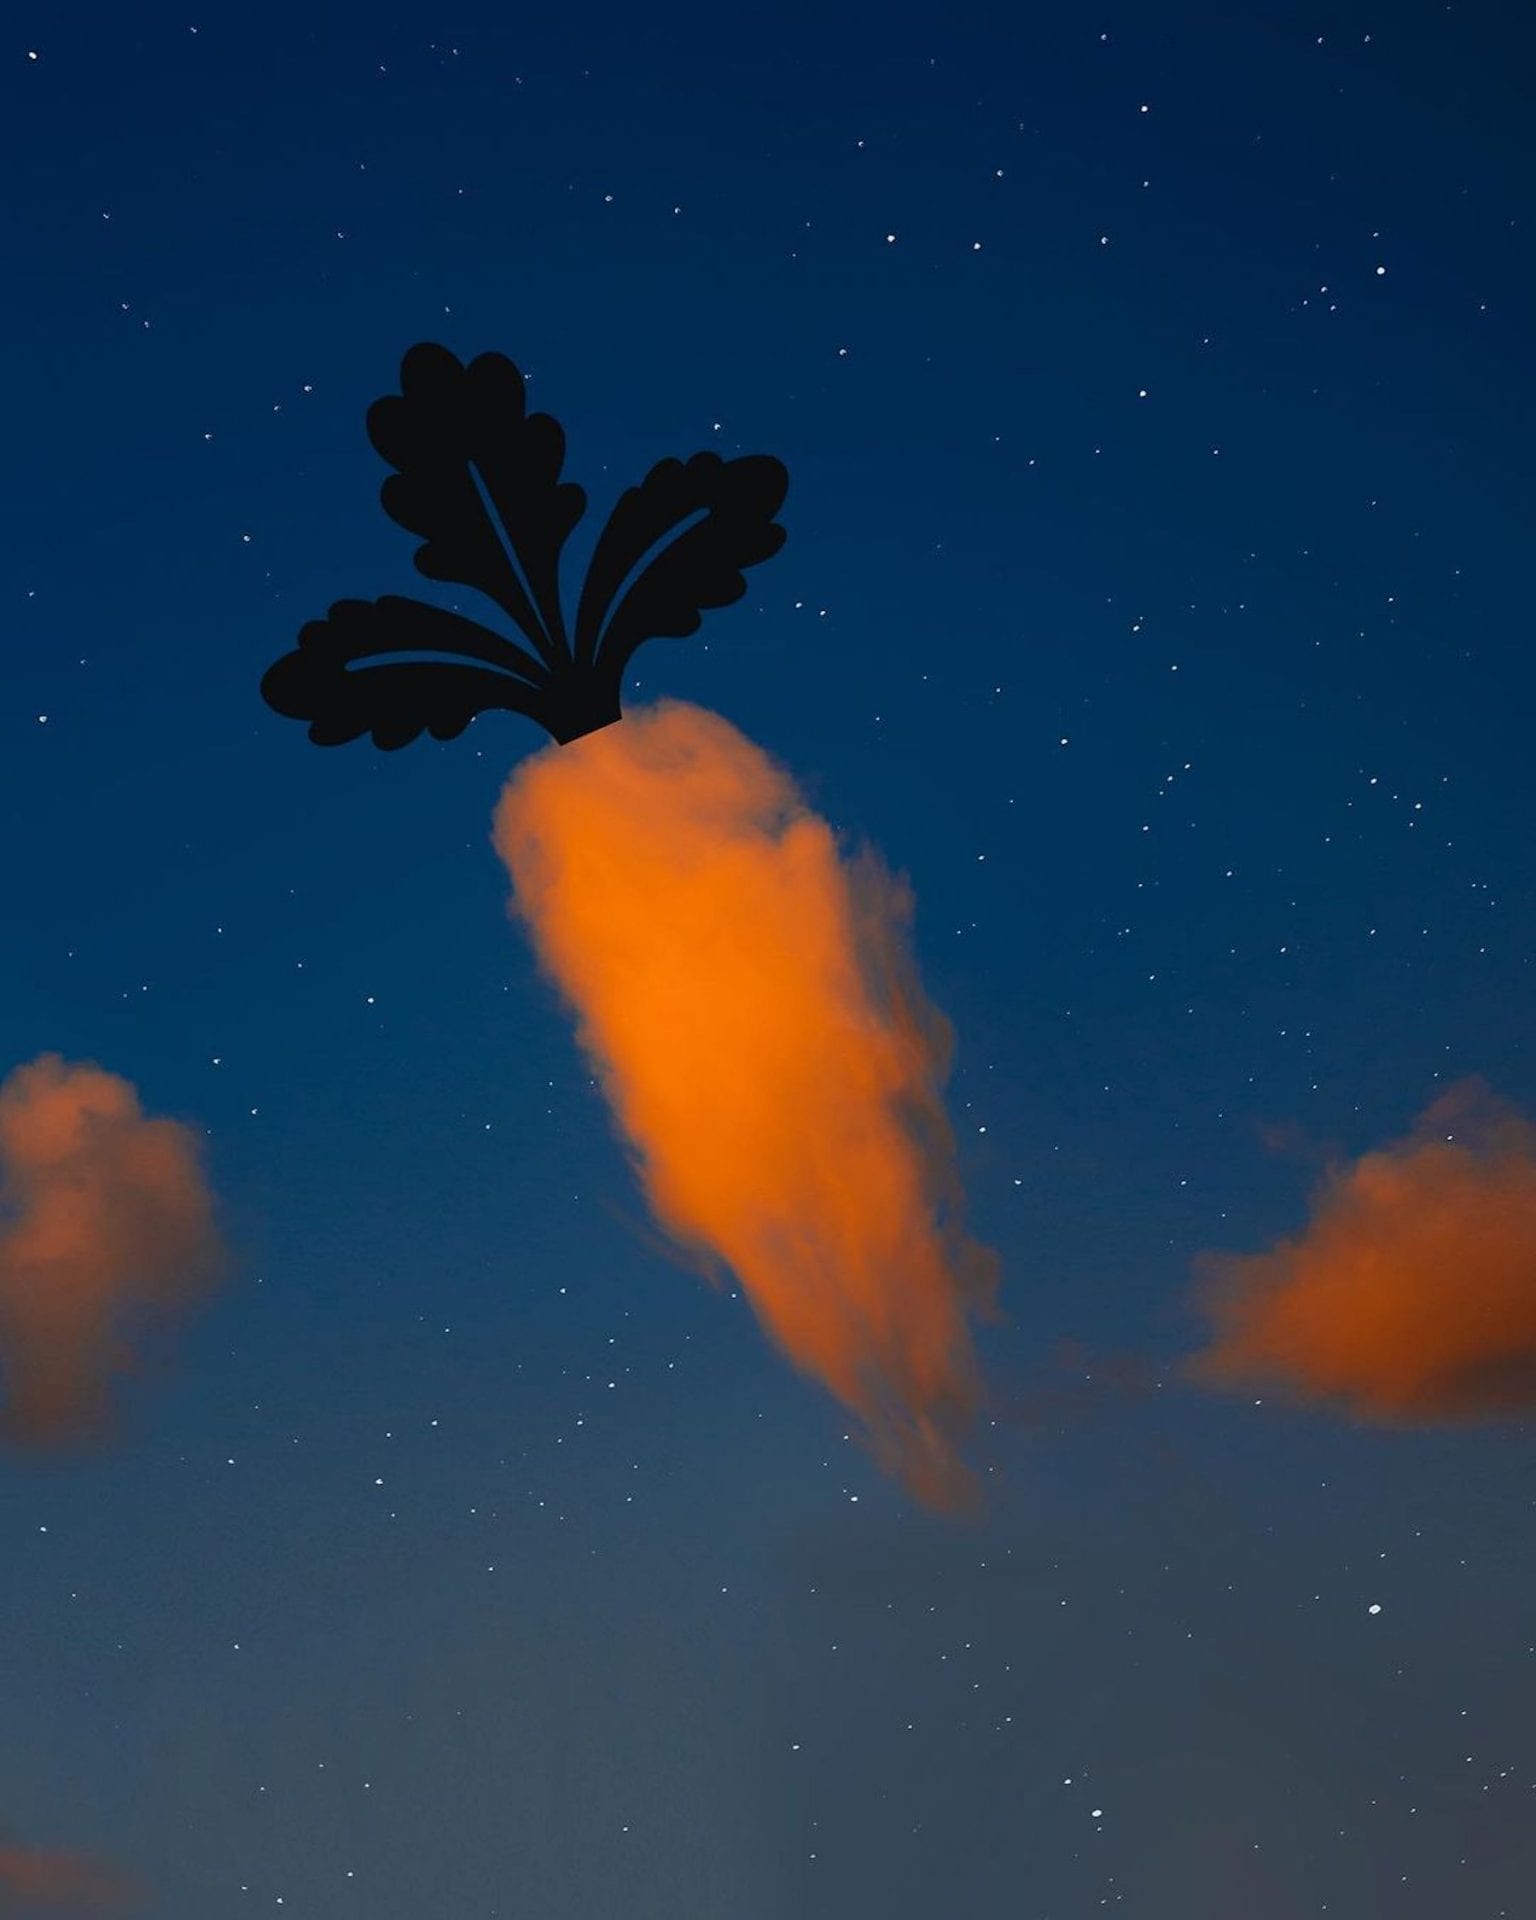 L'artiste Lân Nguyen superpose des silhouettes sur ses photos pour transformer les nuages en objets